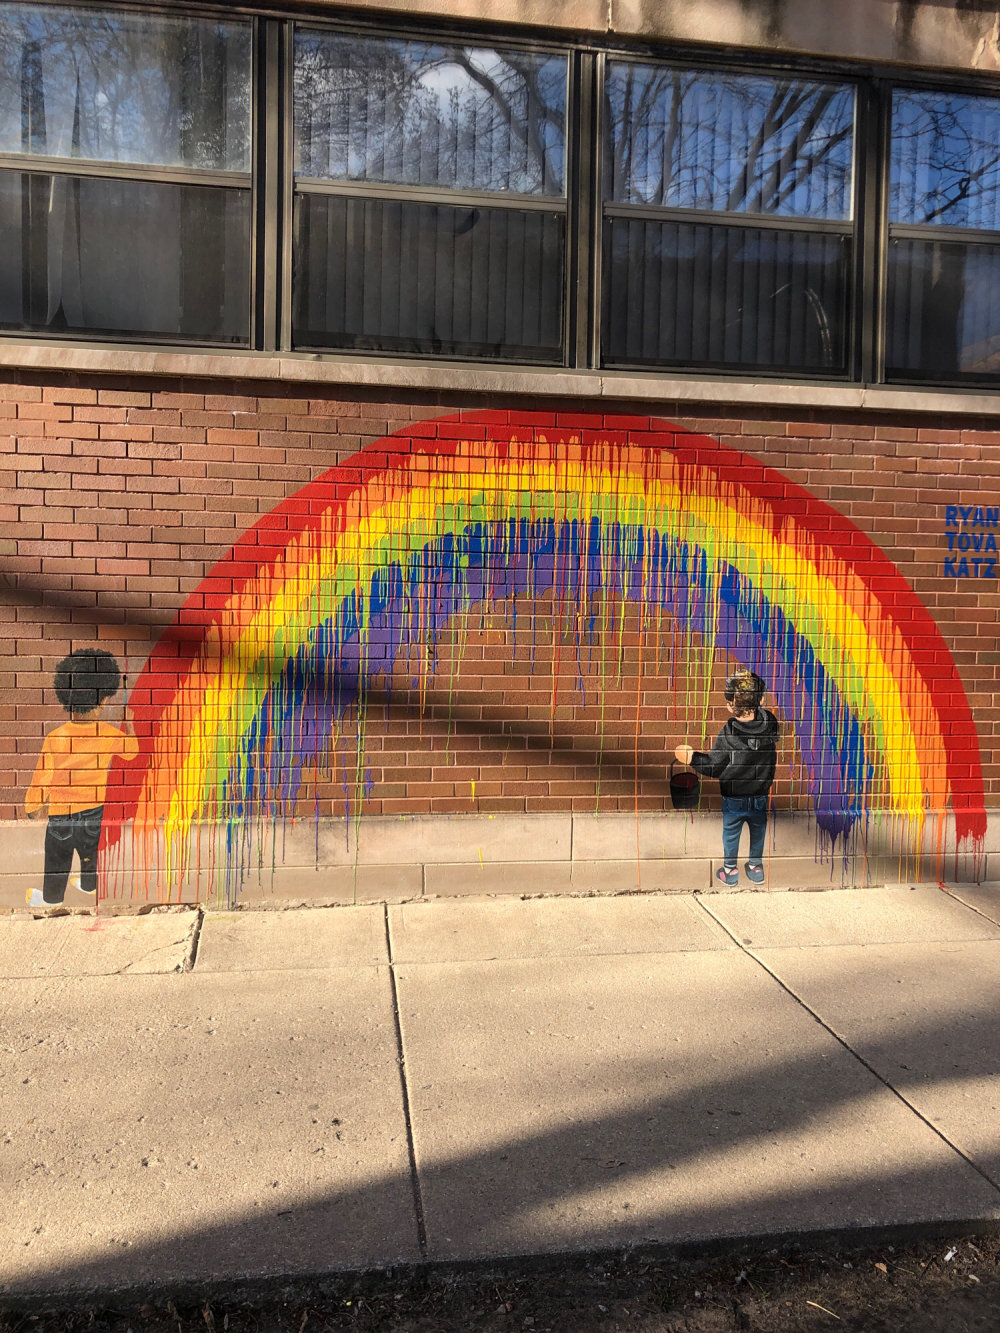 mural in Chicago by artist Ryan Tova Katz.